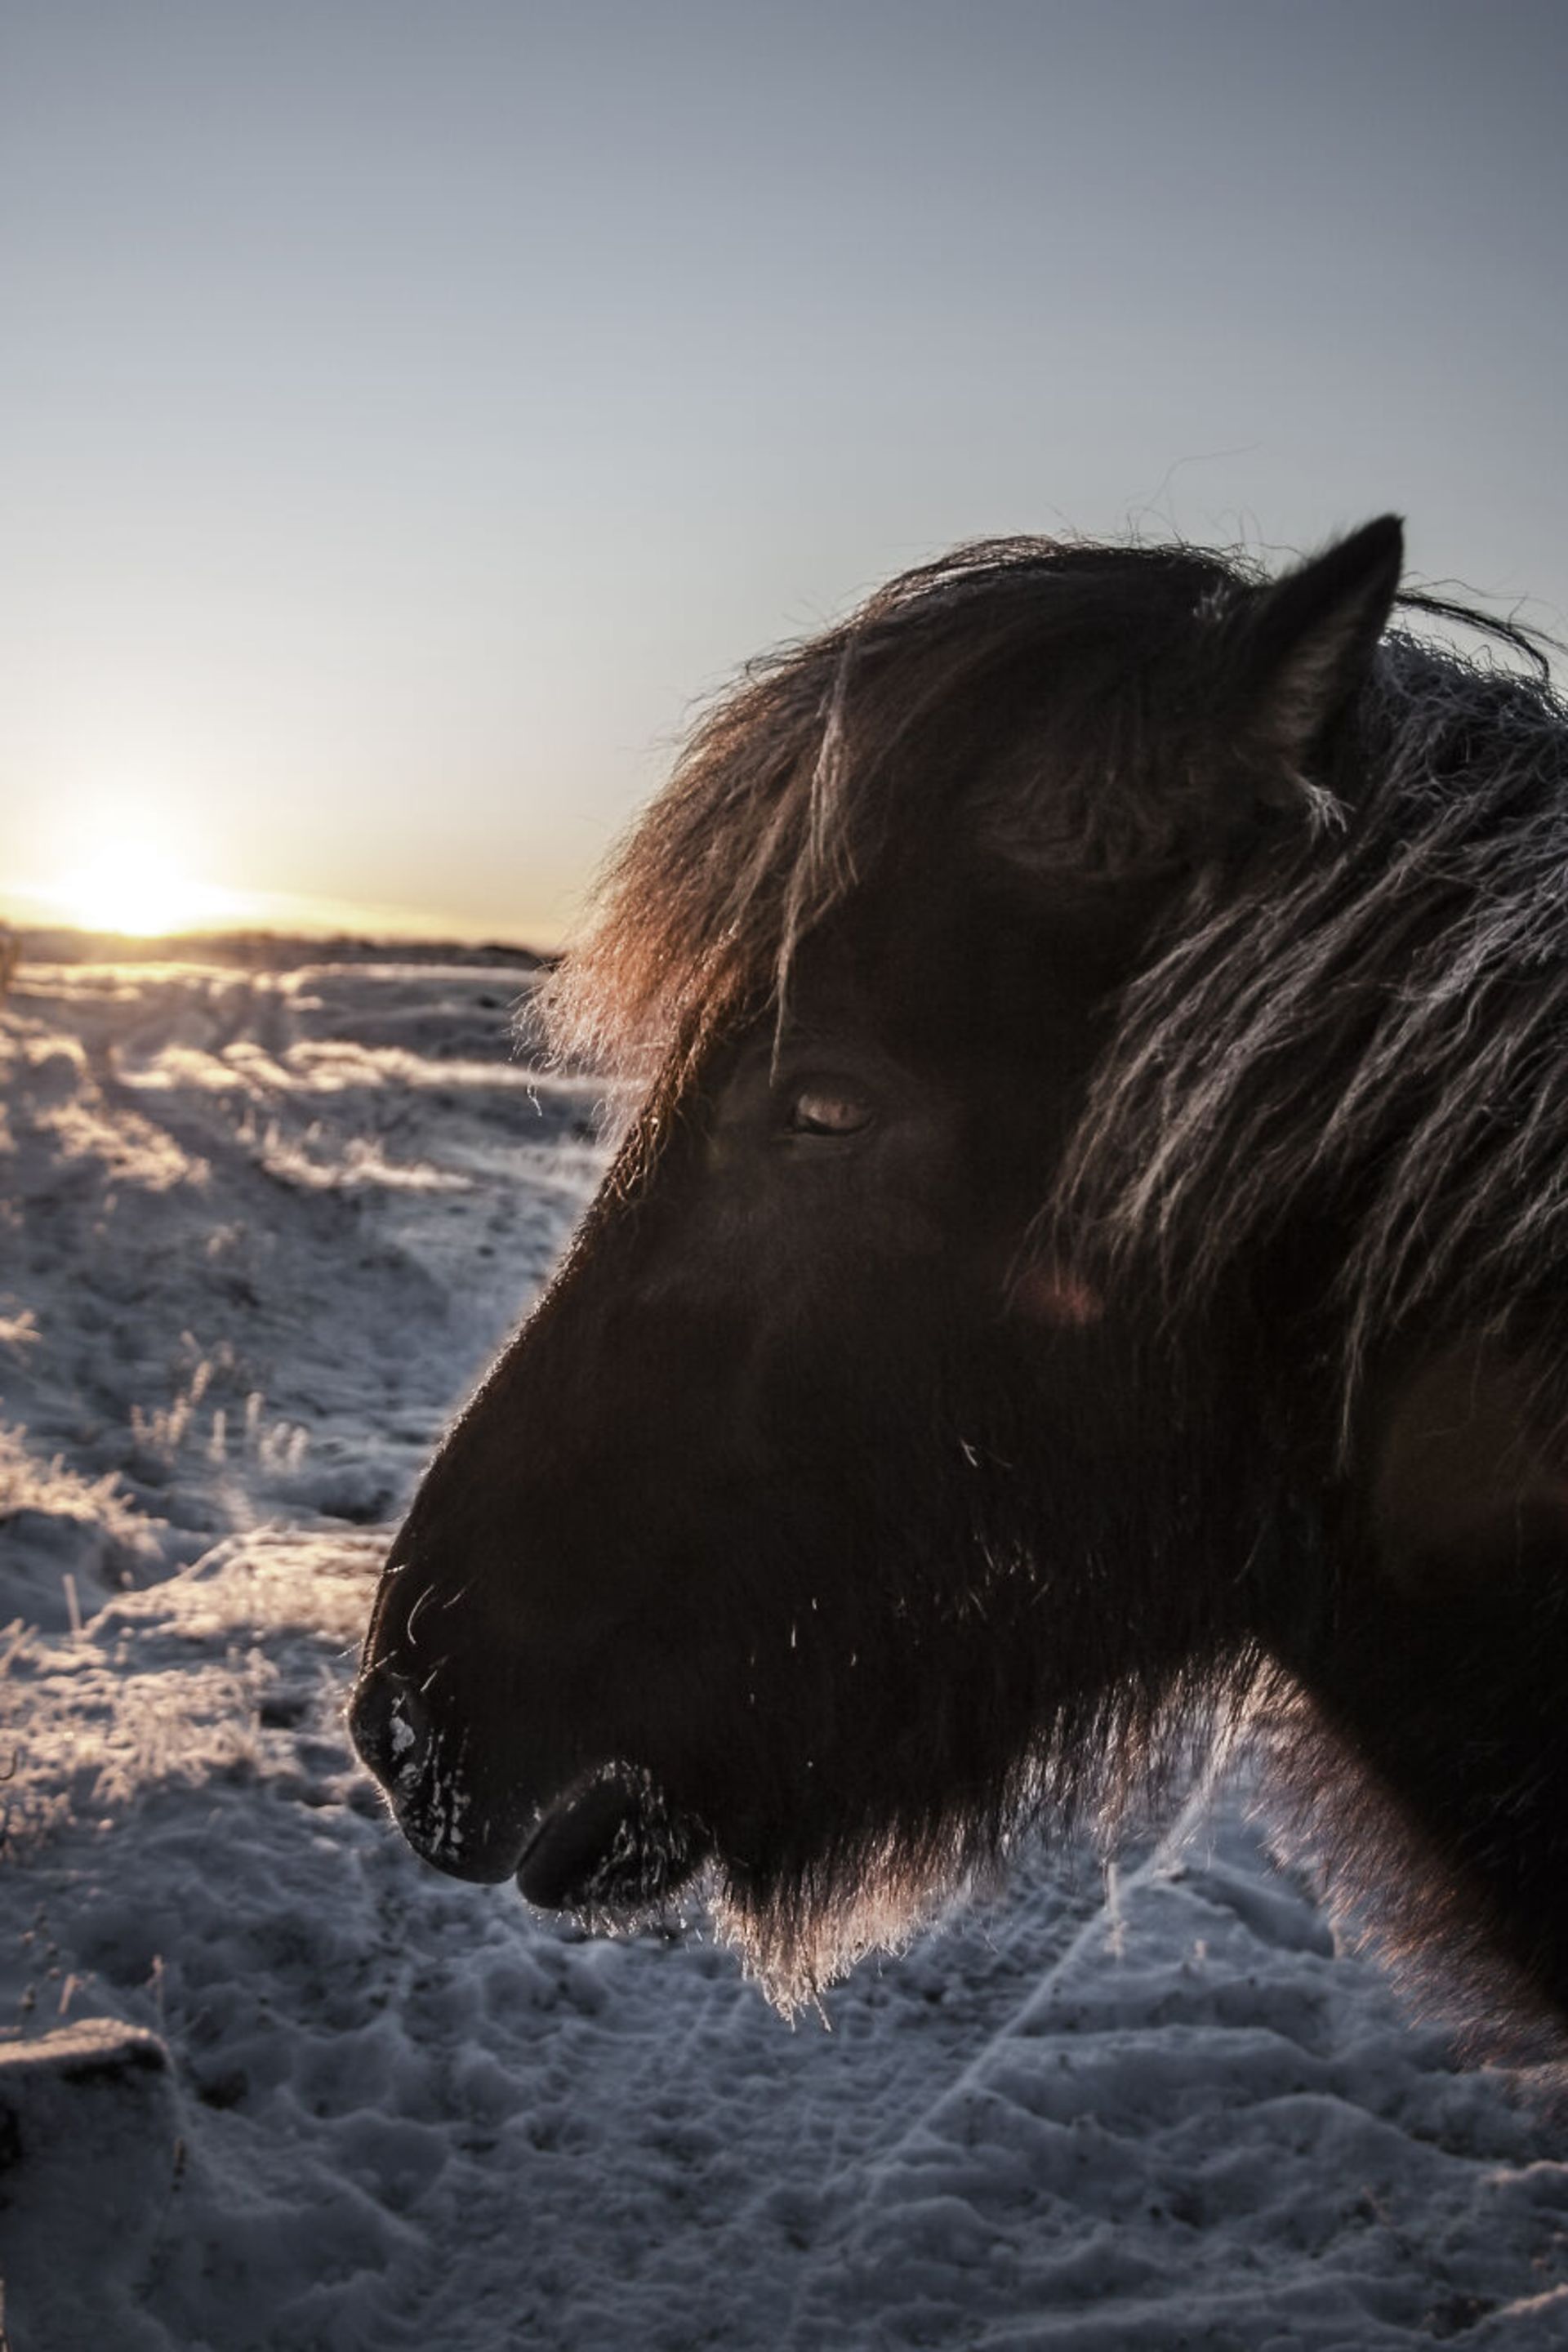 حیوانات در مناظر زمستانی ایسلند